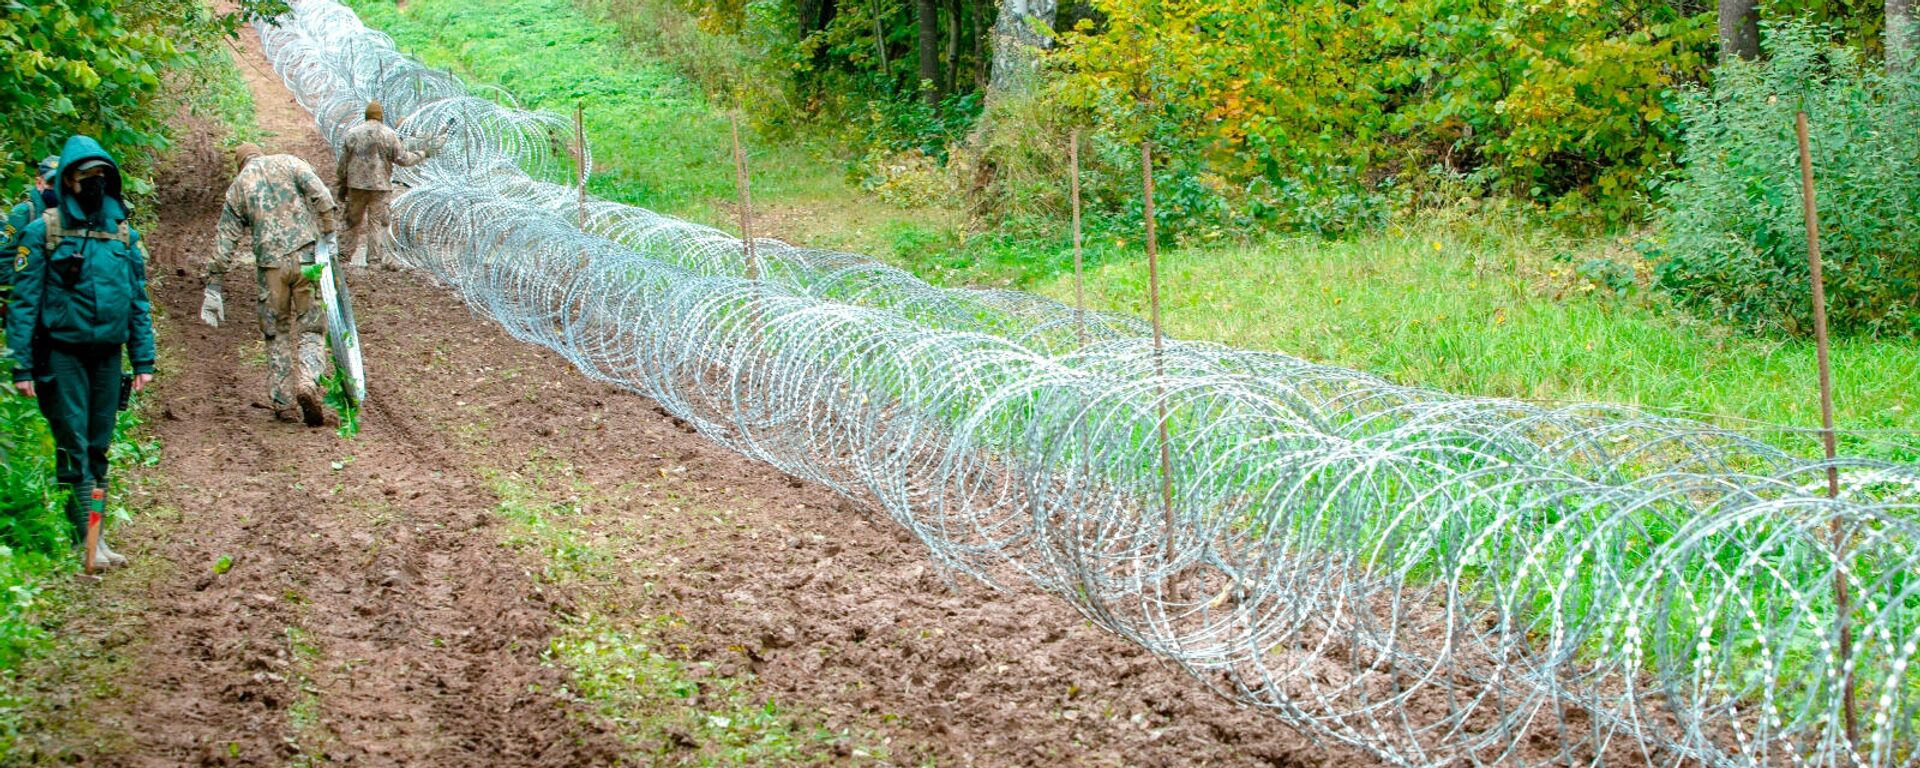 Латвийские пограничники устанавливают забор из колючей проволоки на латвийско-белорусской границе - Sputnik Латвия, 1920, 26.10.2021